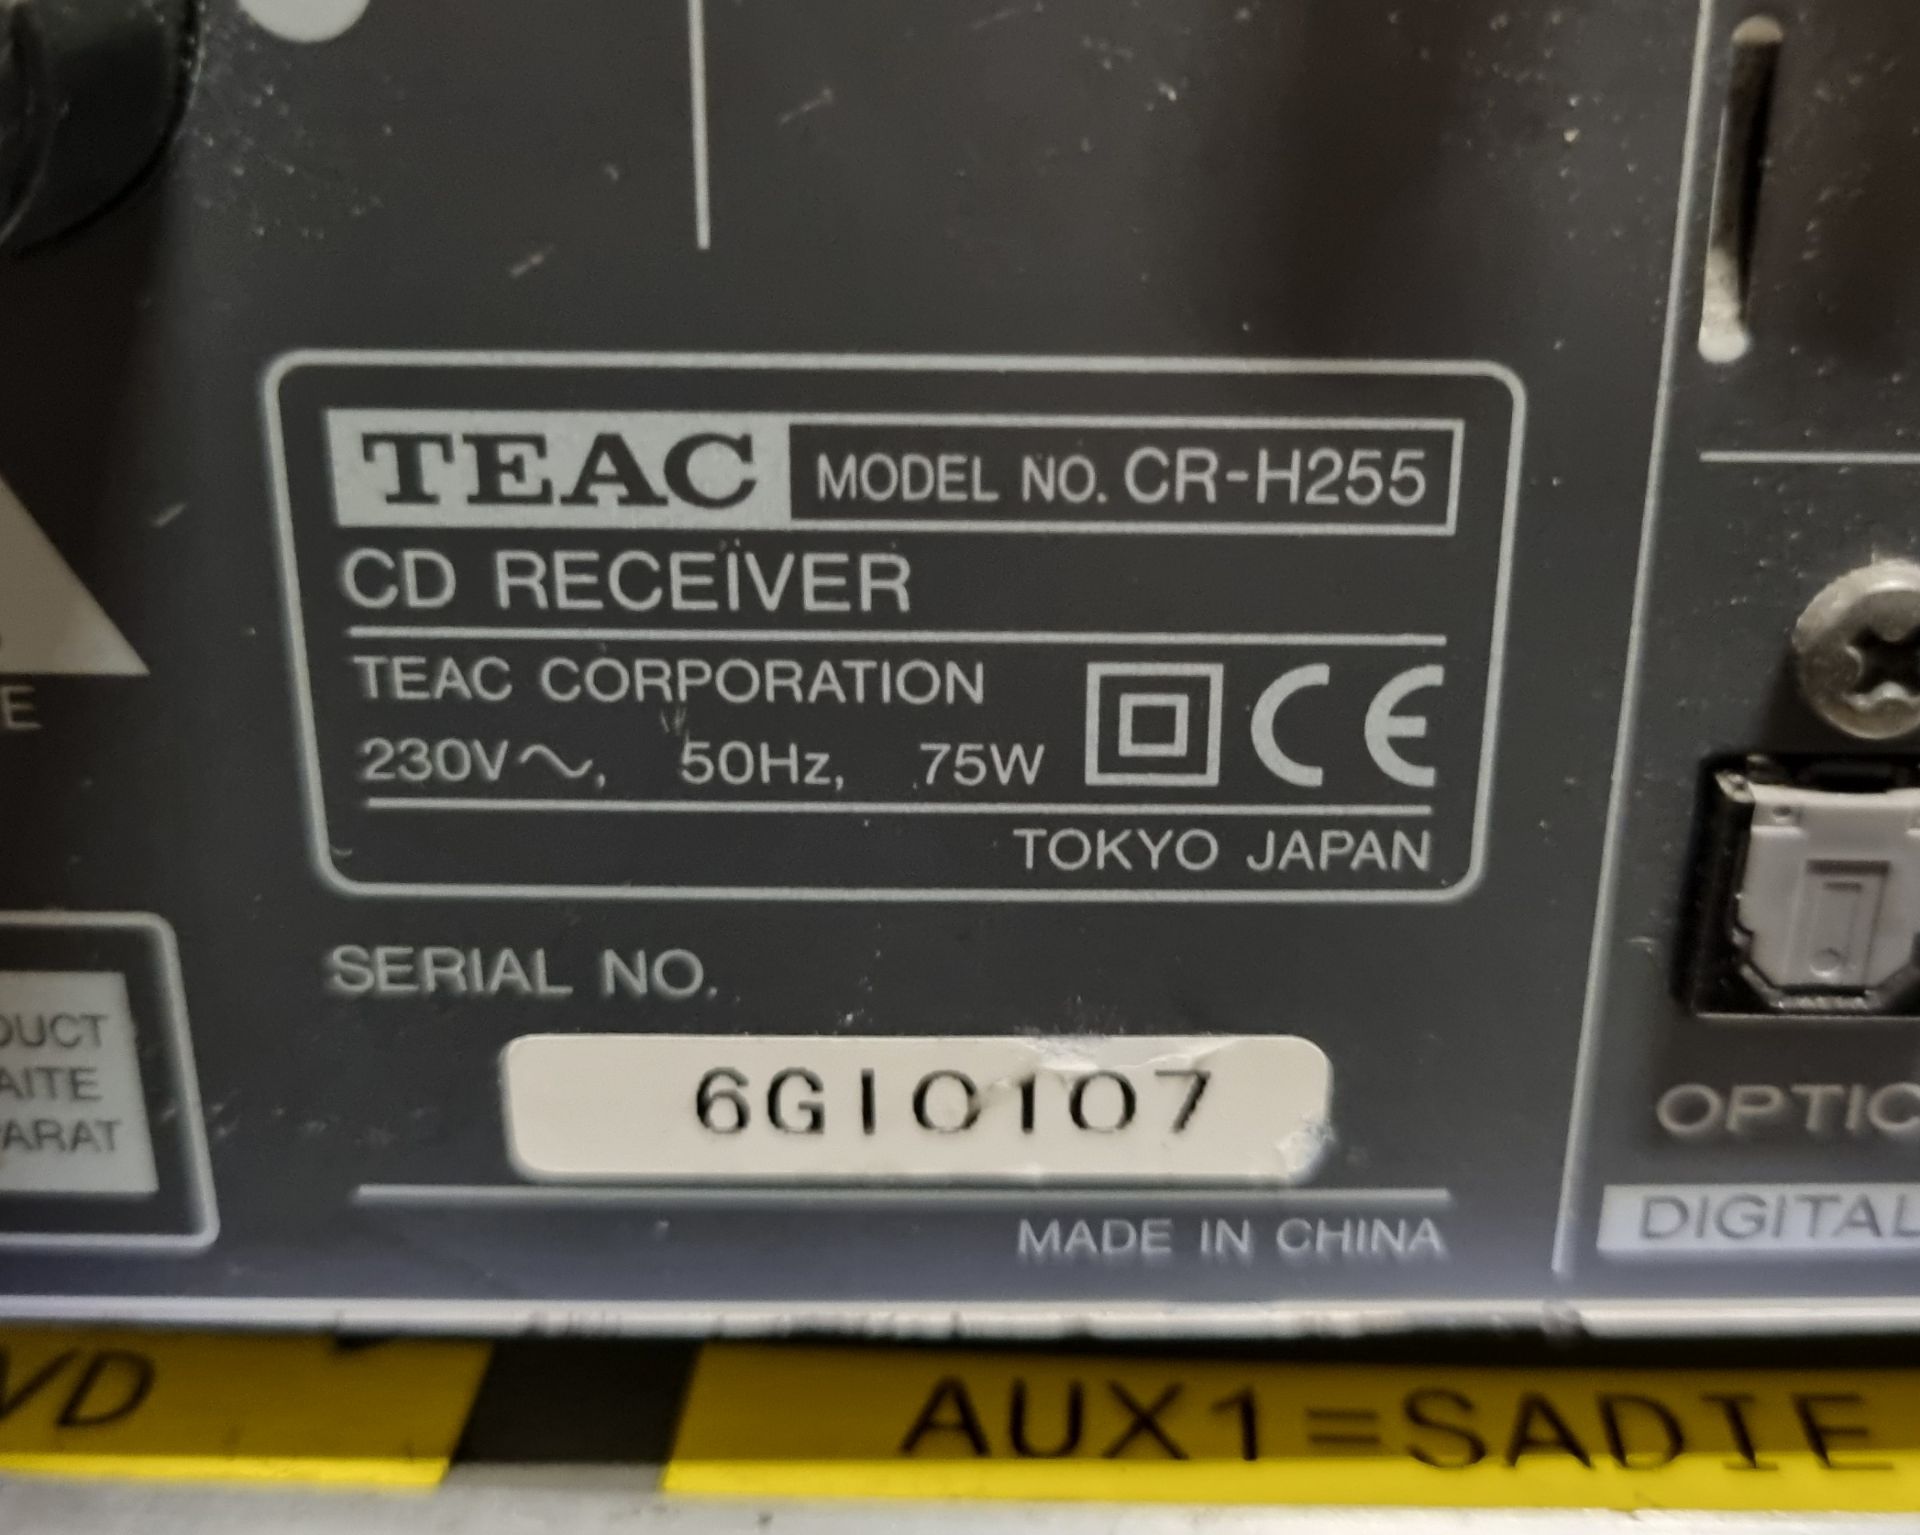 6x TEAC CR-H250 CD receiver units, 2x Denon RCD-M40DAB CD receiver units, TEAC CR-H248 CD receiver - Image 10 of 10